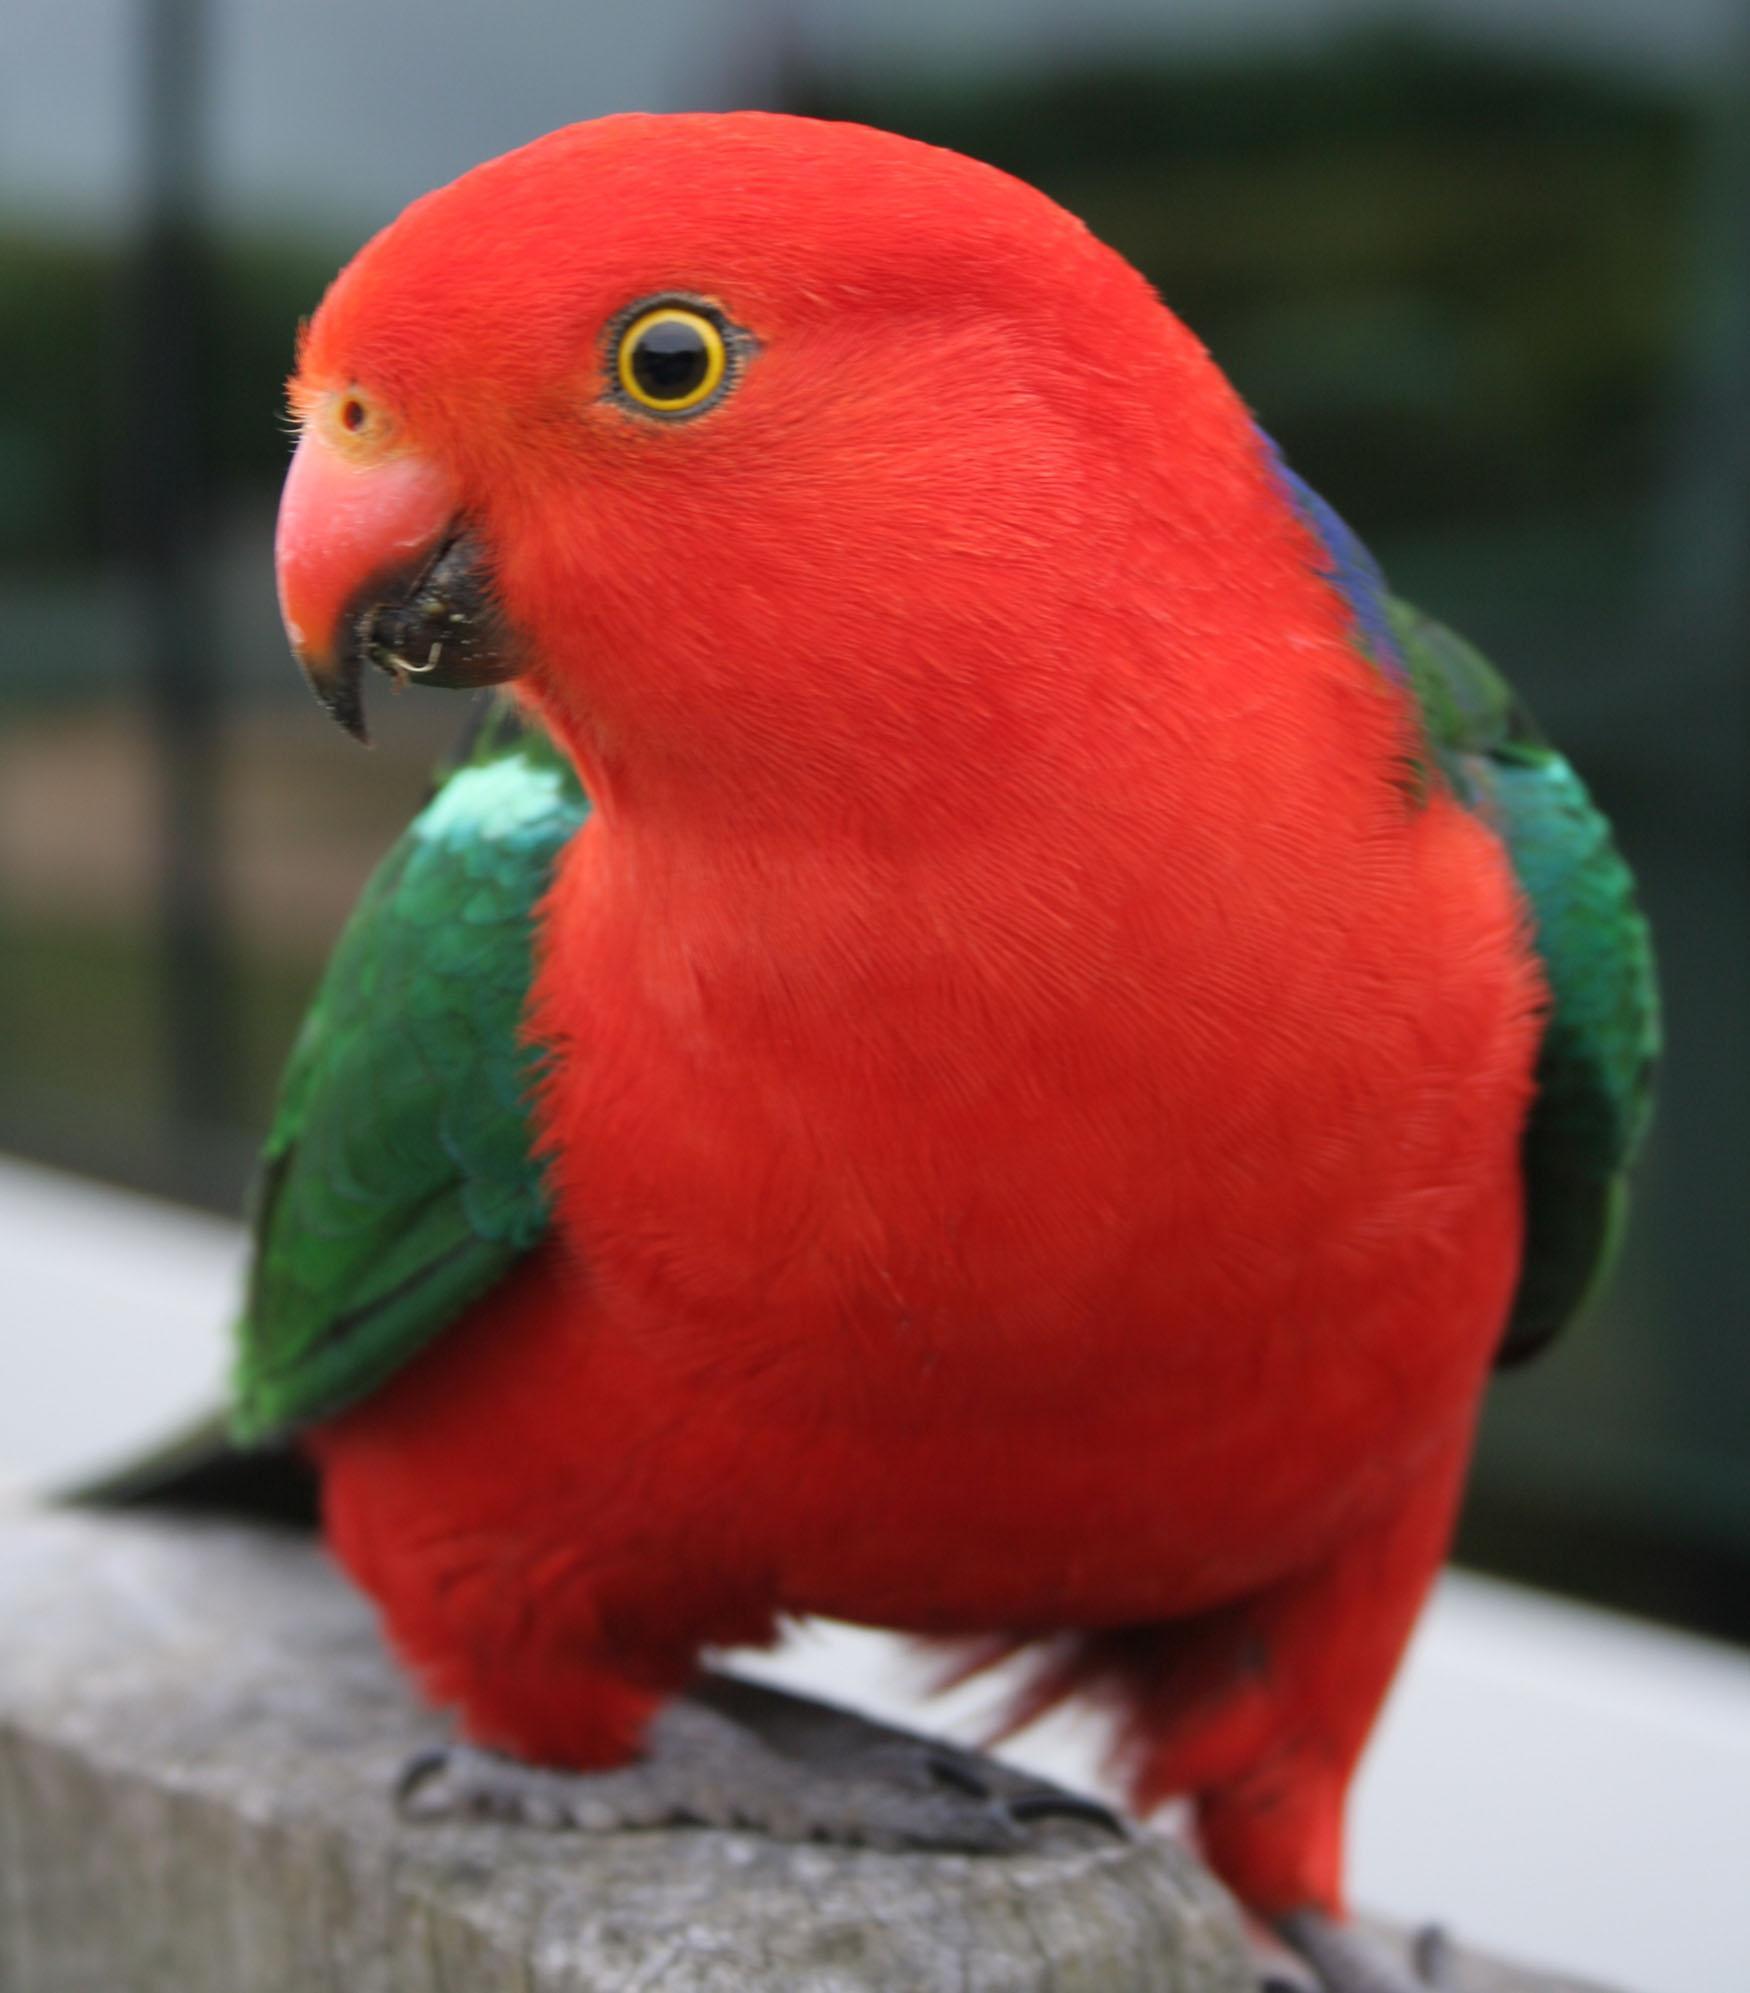 desktop pics of parrot birds download